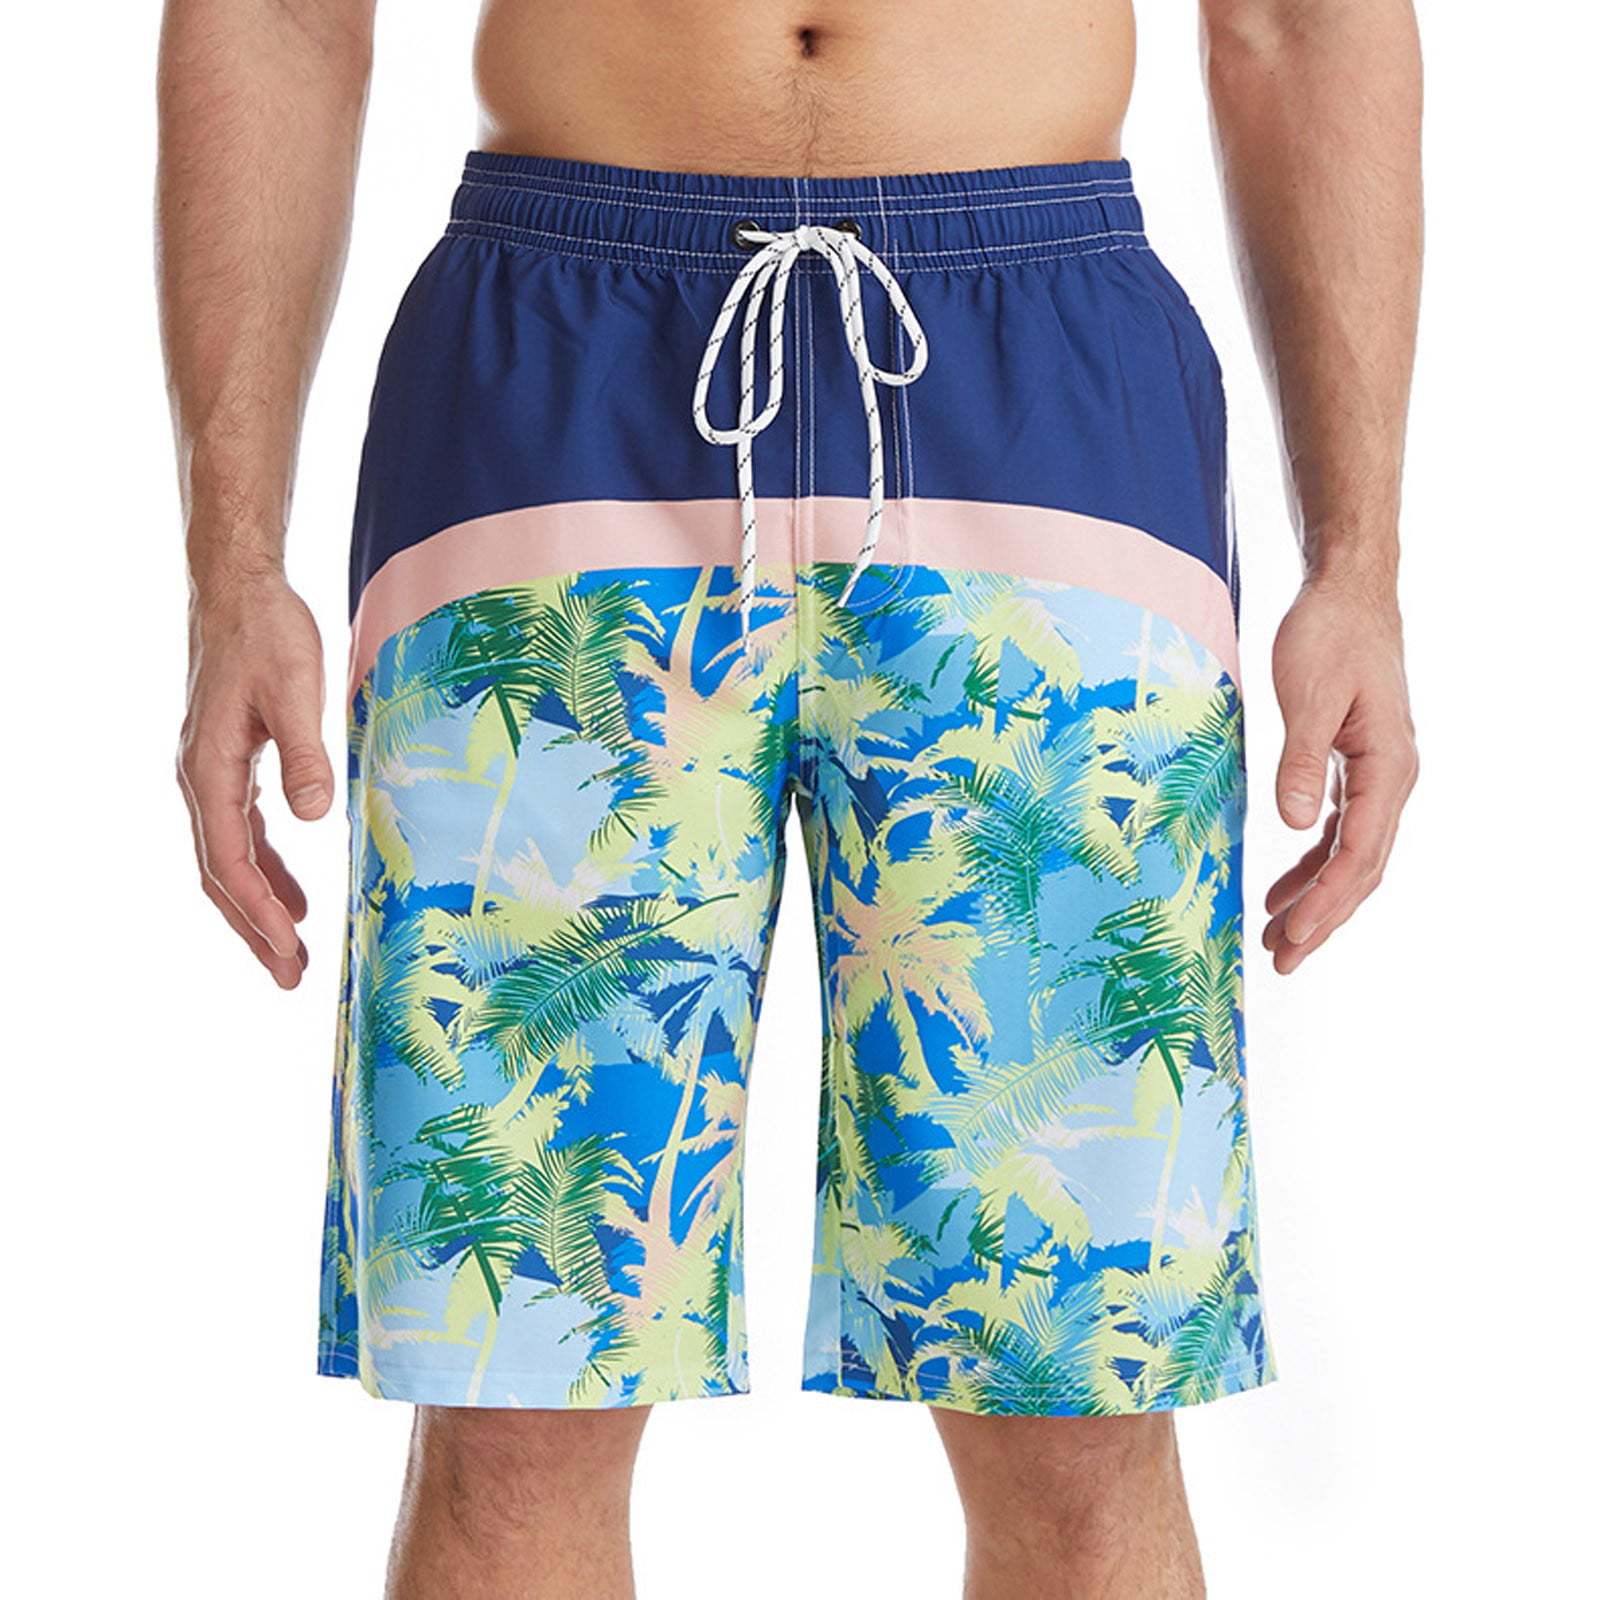 Beach Swimsuit Sports Swim Trunks Quick Dry Mens Split Side Running Short Men's Slim Swim Shorts with Pockets